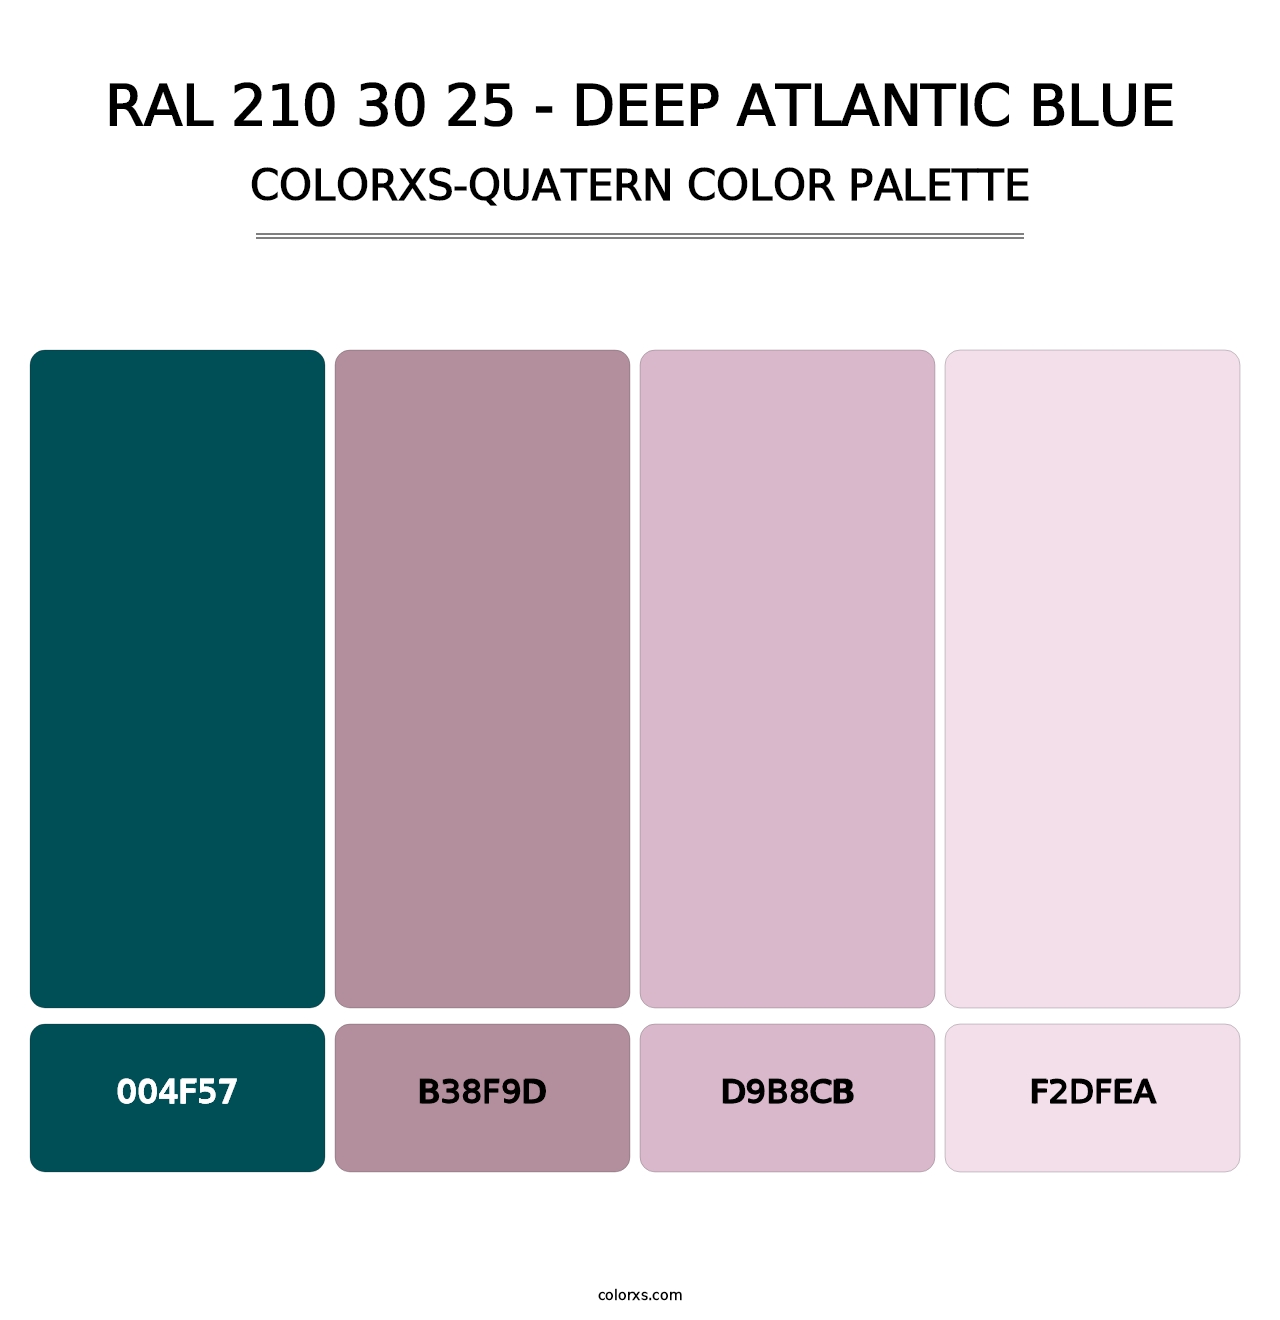 RAL 210 30 25 - Deep Atlantic Blue - Colorxs Quatern Palette